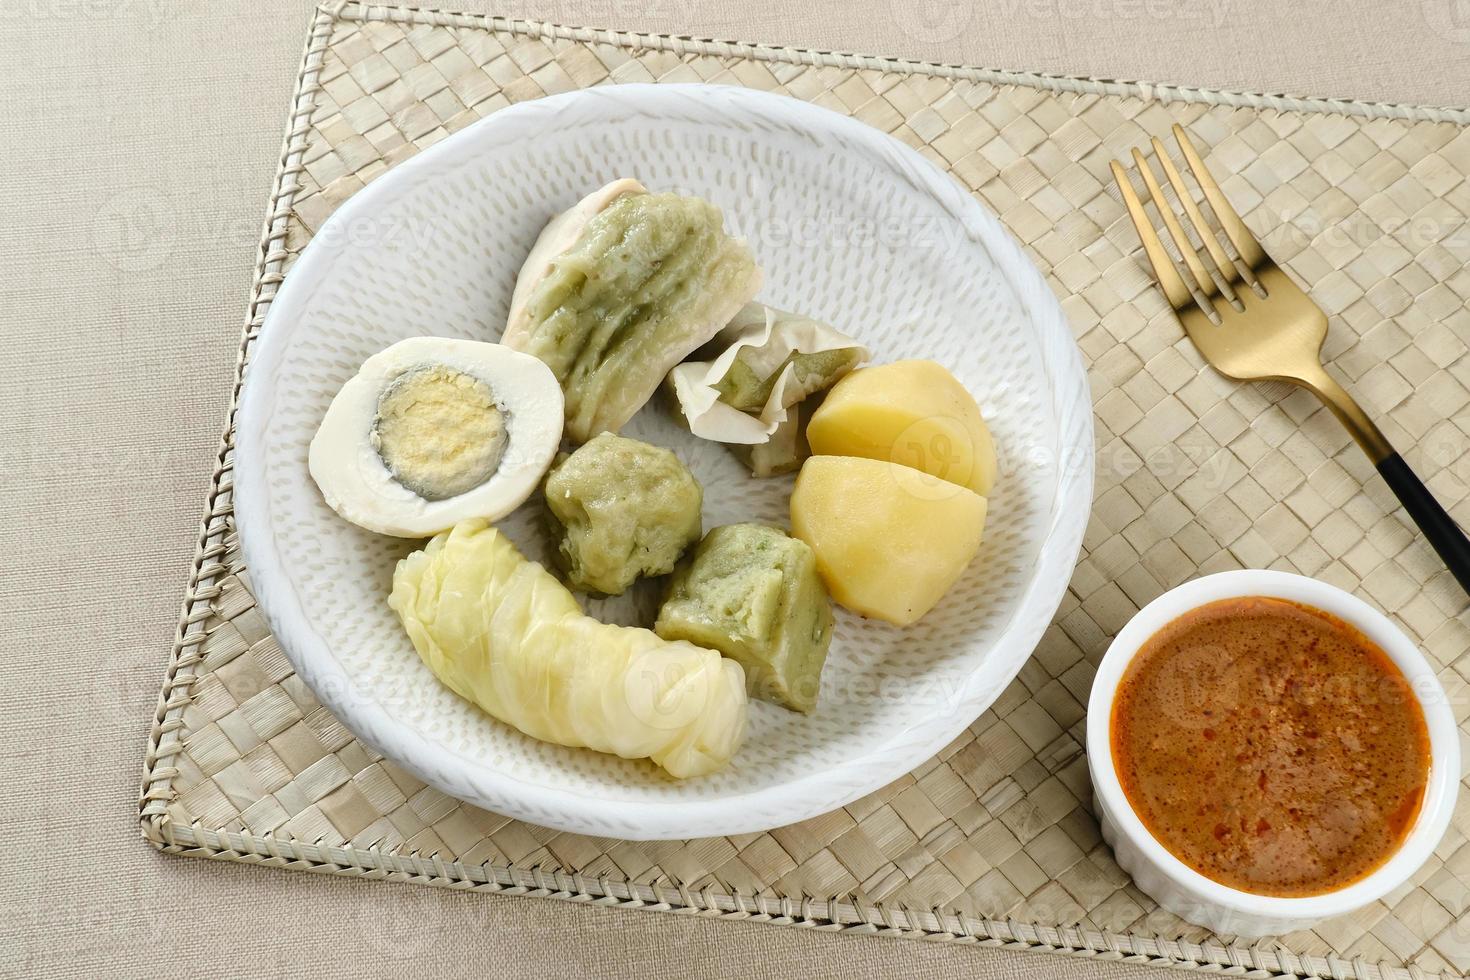 siomay bandung, gnocchi al vapore con uovo sodo, tofu, patate e involtino di cavolo cappuccio. cibo di strada tradizionale indonesiano con salsa di arachidi e salsa di soia, servito con lime verde. foto